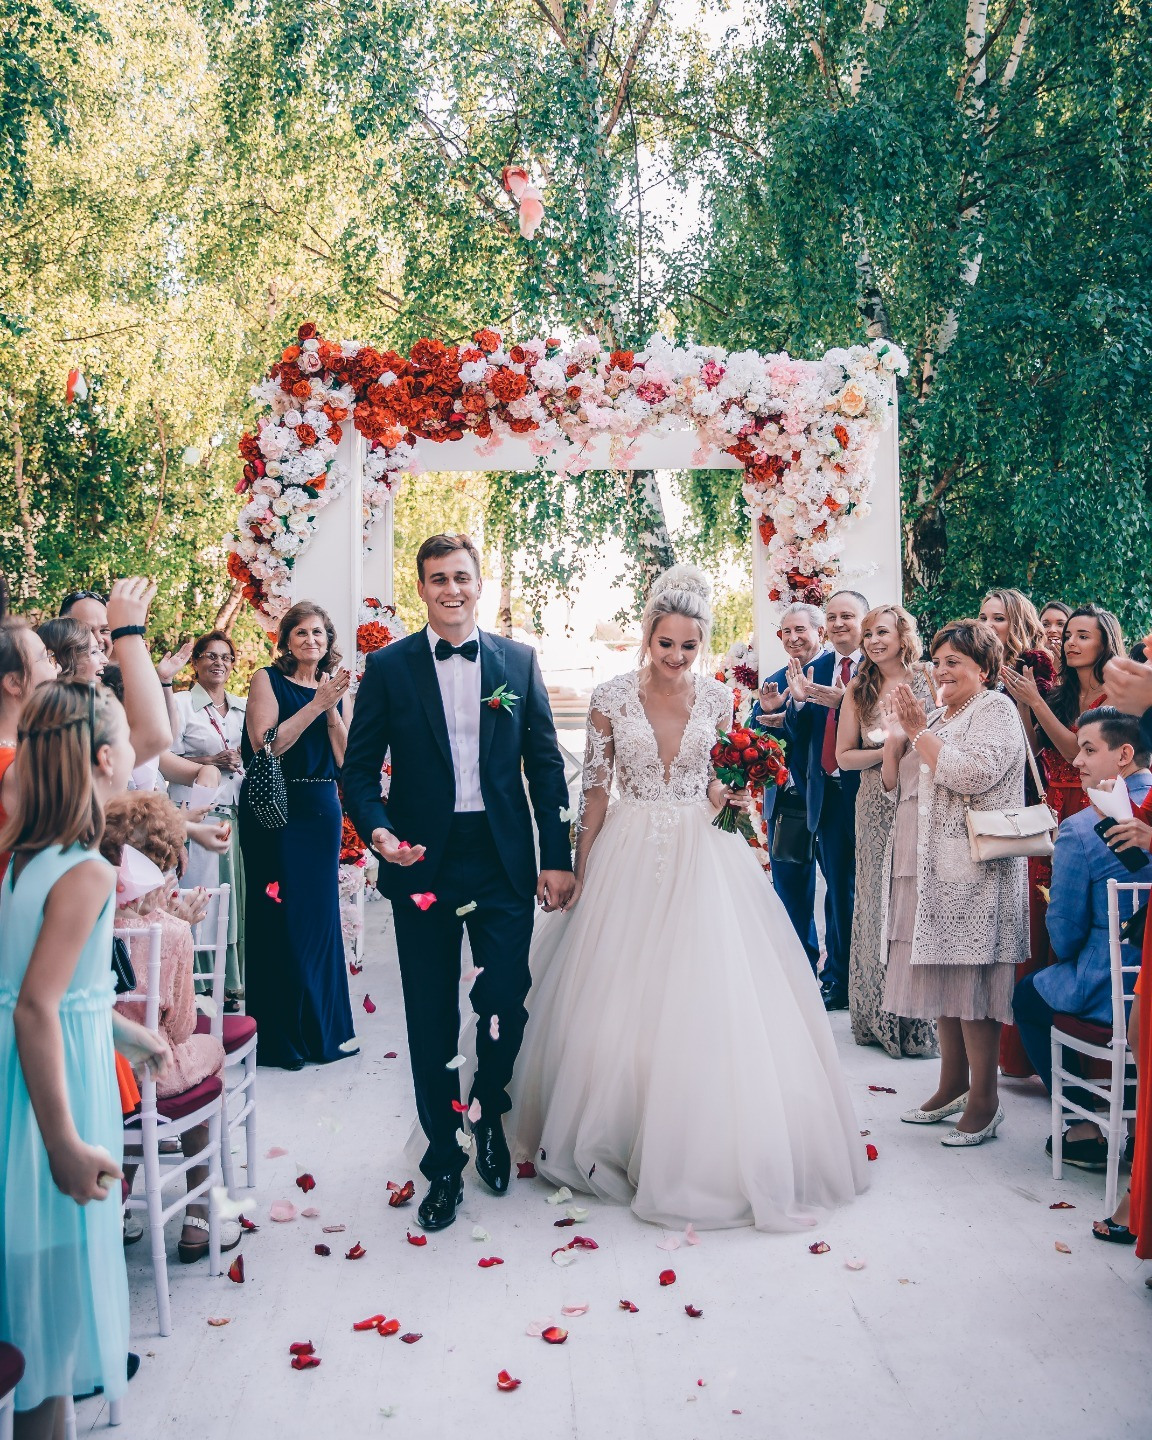 Любовь длиною в жизнь: классическая свадьба в яркой палитре